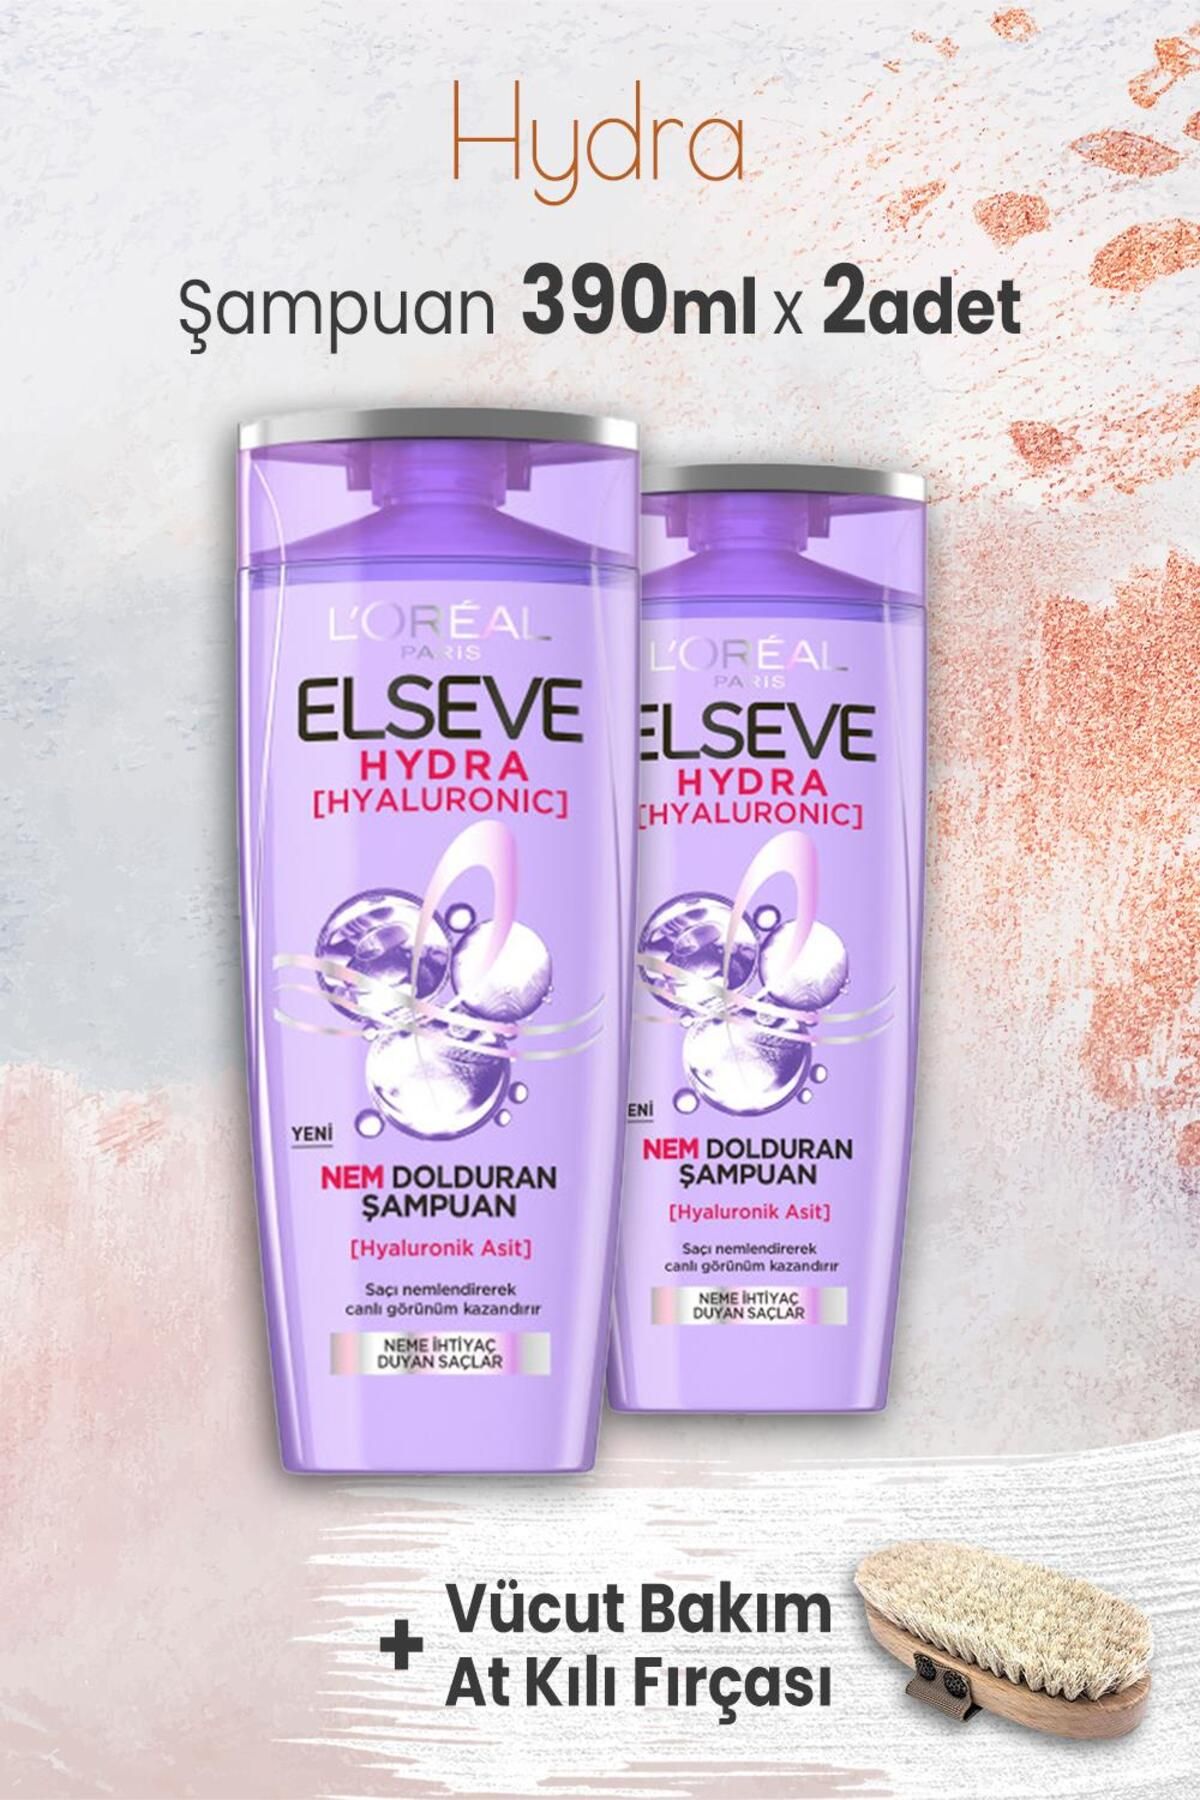 Elseve Hydra Hyaluronik Şampuan 390 ml X 2 Adet Ve Vücut Bakımı At Kılı Fırçası